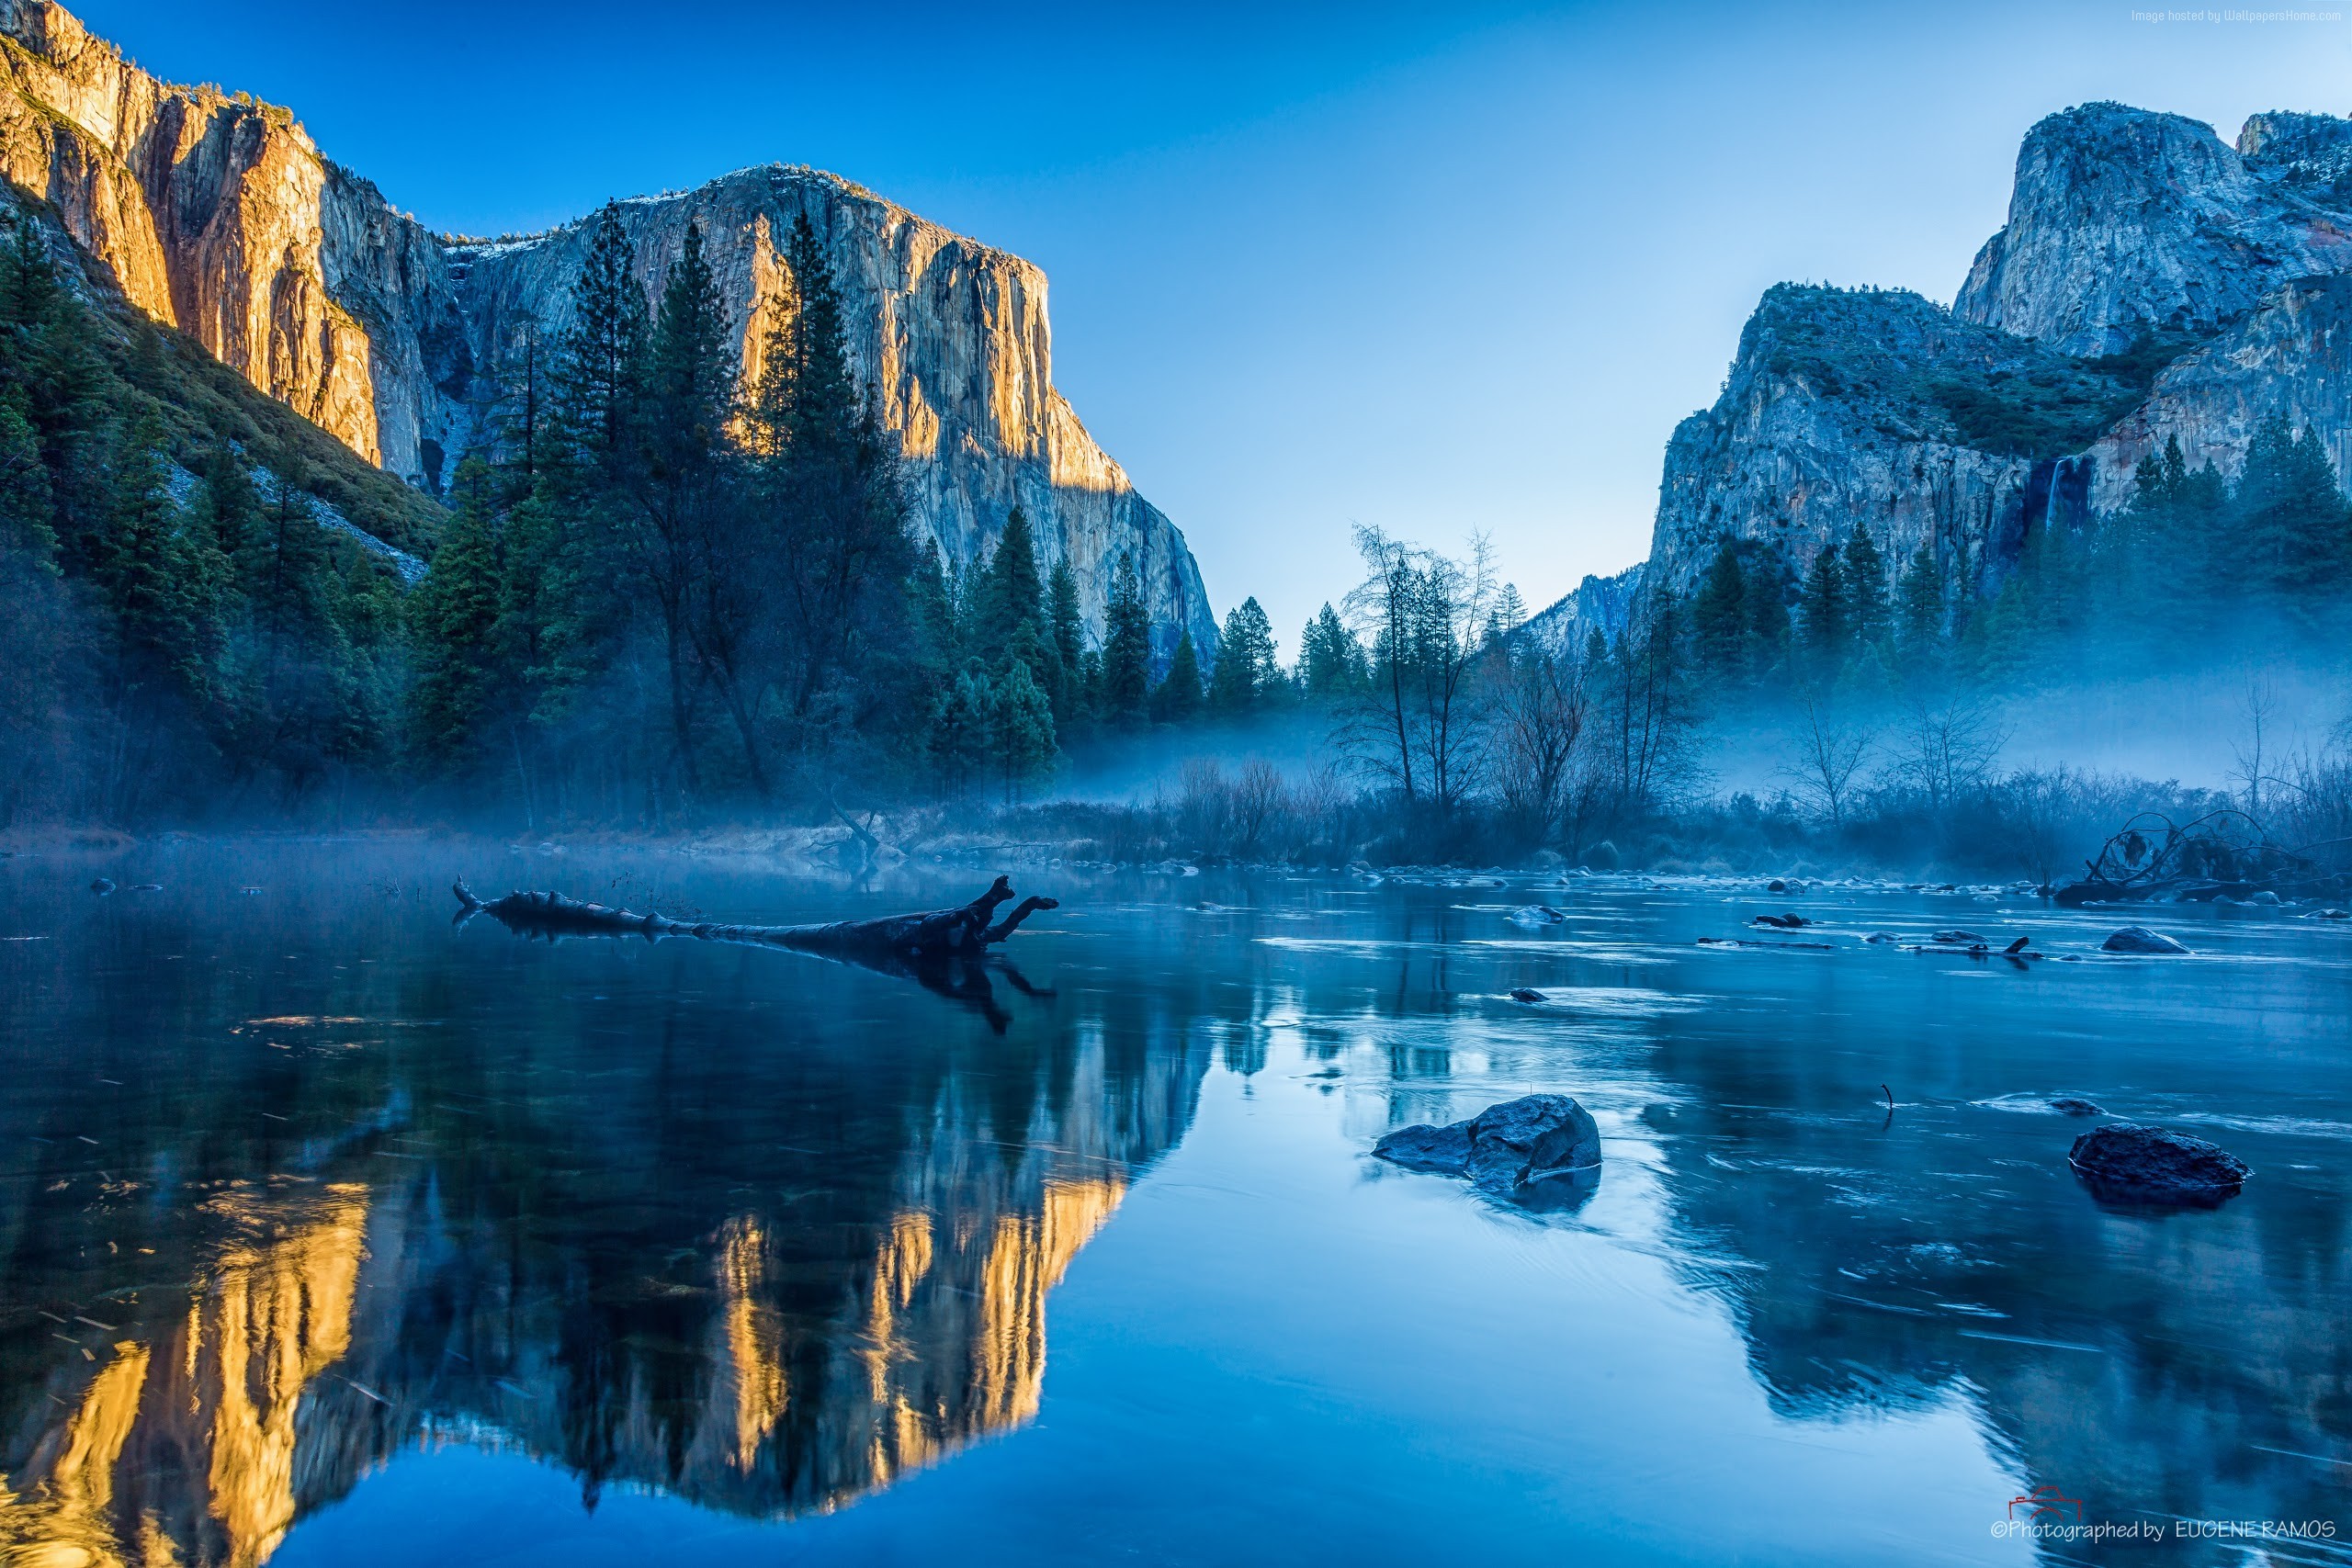 Những hình nền Yosemite đẹp như tranh vẽ chưa bao giờ dễ tải miễn phí đến thế! Cảnh quan hùng vĩ của núi non và hồ nước sẽ đem đến cho bạn sự dịu dàng và thư giãn đầy tràn. Hãy nhanh tay tải về để thay đổi không khí làm việc trong mùa này nhé!